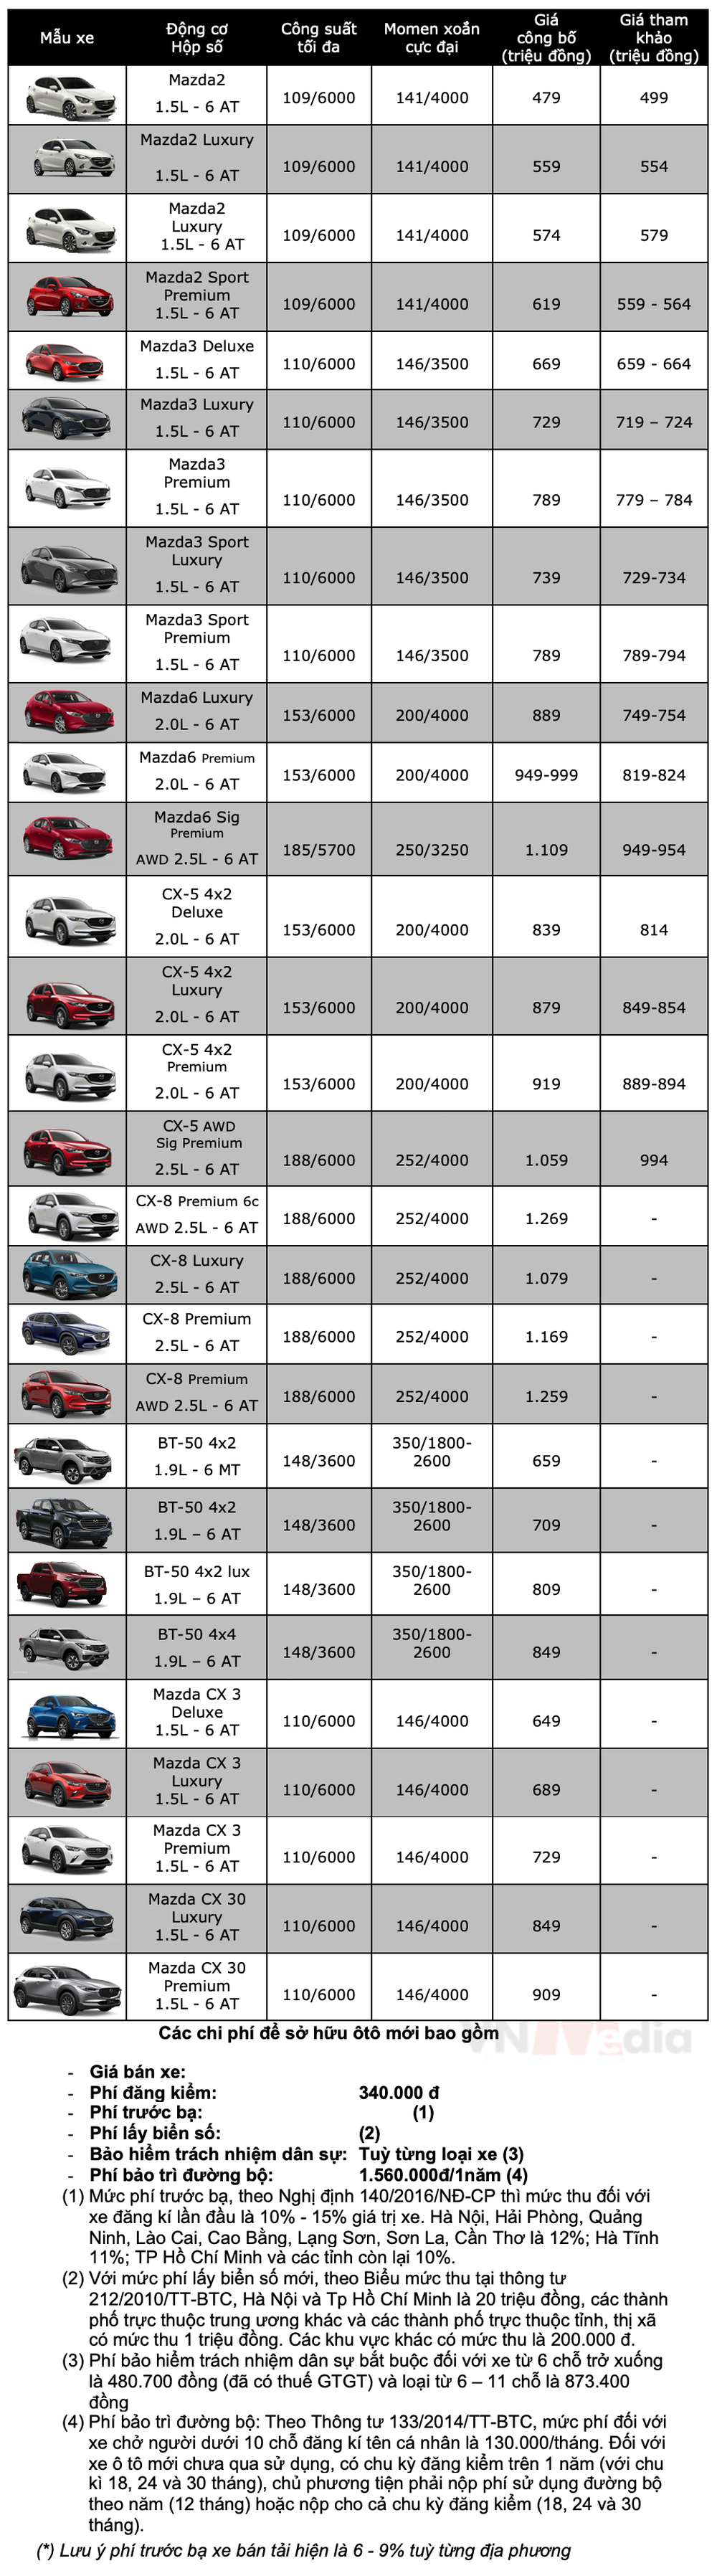 Bảng giá xe Mazda tháng 4: Mazda3 được ưu đãi 100% lệ phí trước bạ - Ảnh 2.